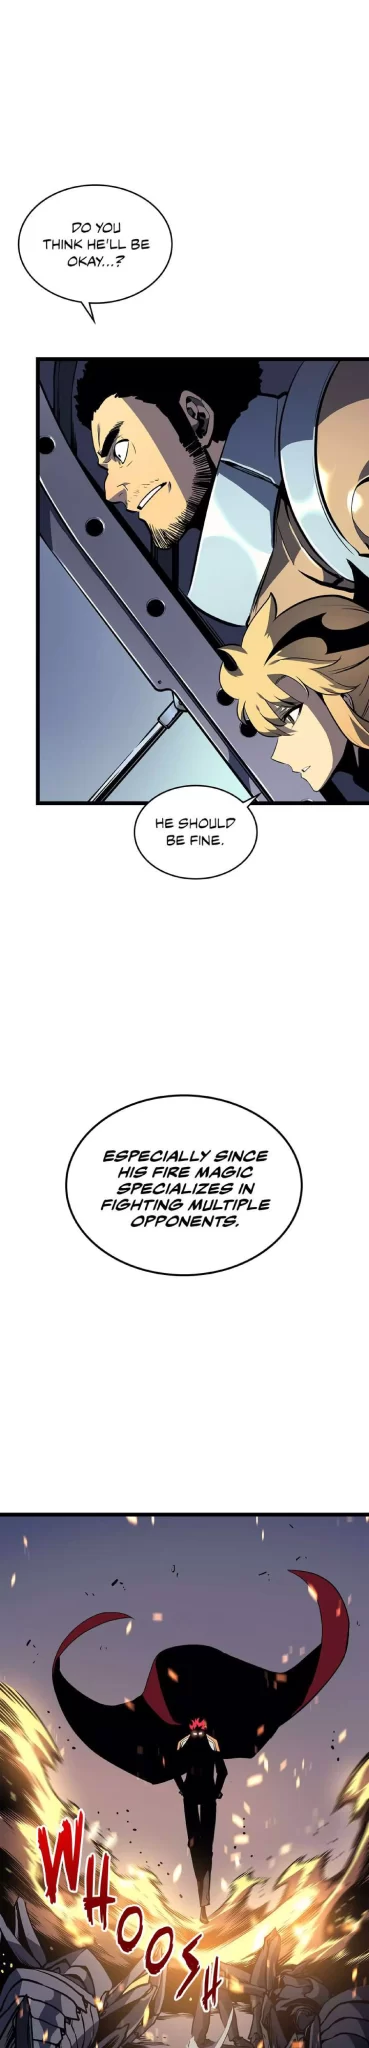 Solo Leveling Manga Manga Chapter - 95 - image 33